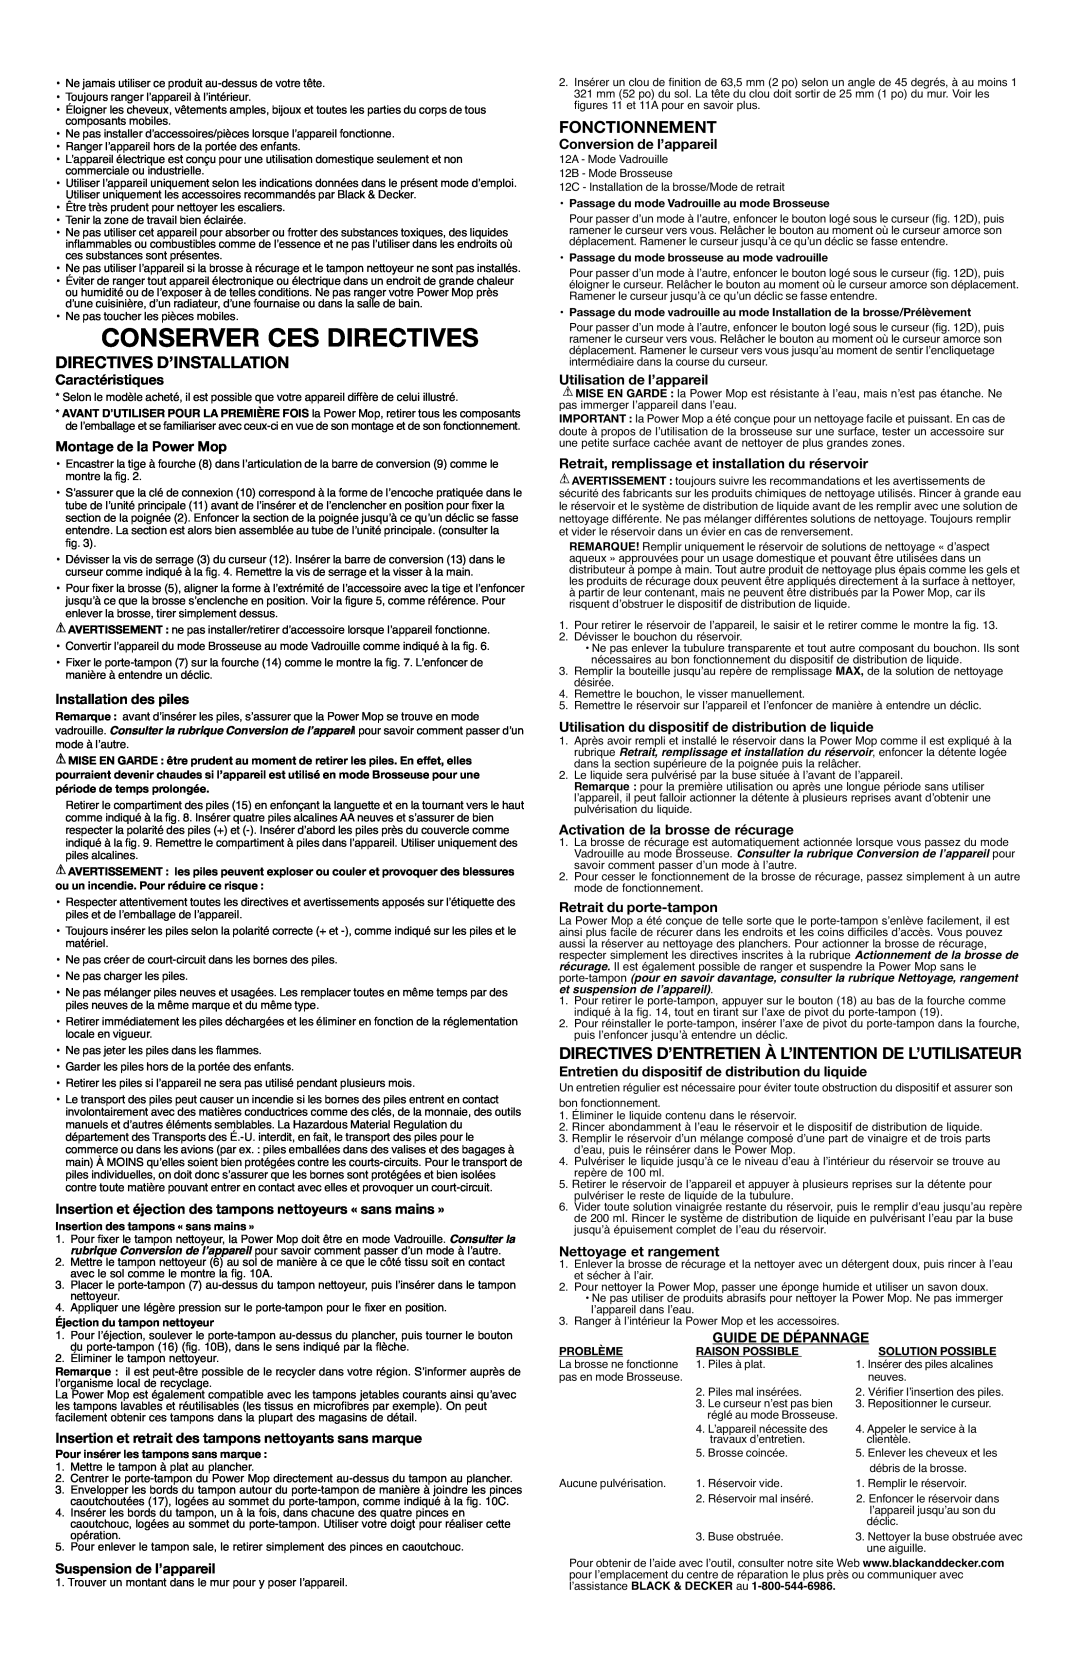 Black & Decker PM1000, 90503695 instruction manual Conserver Ces Directives, Directives D’Installation, Fonctionnement 